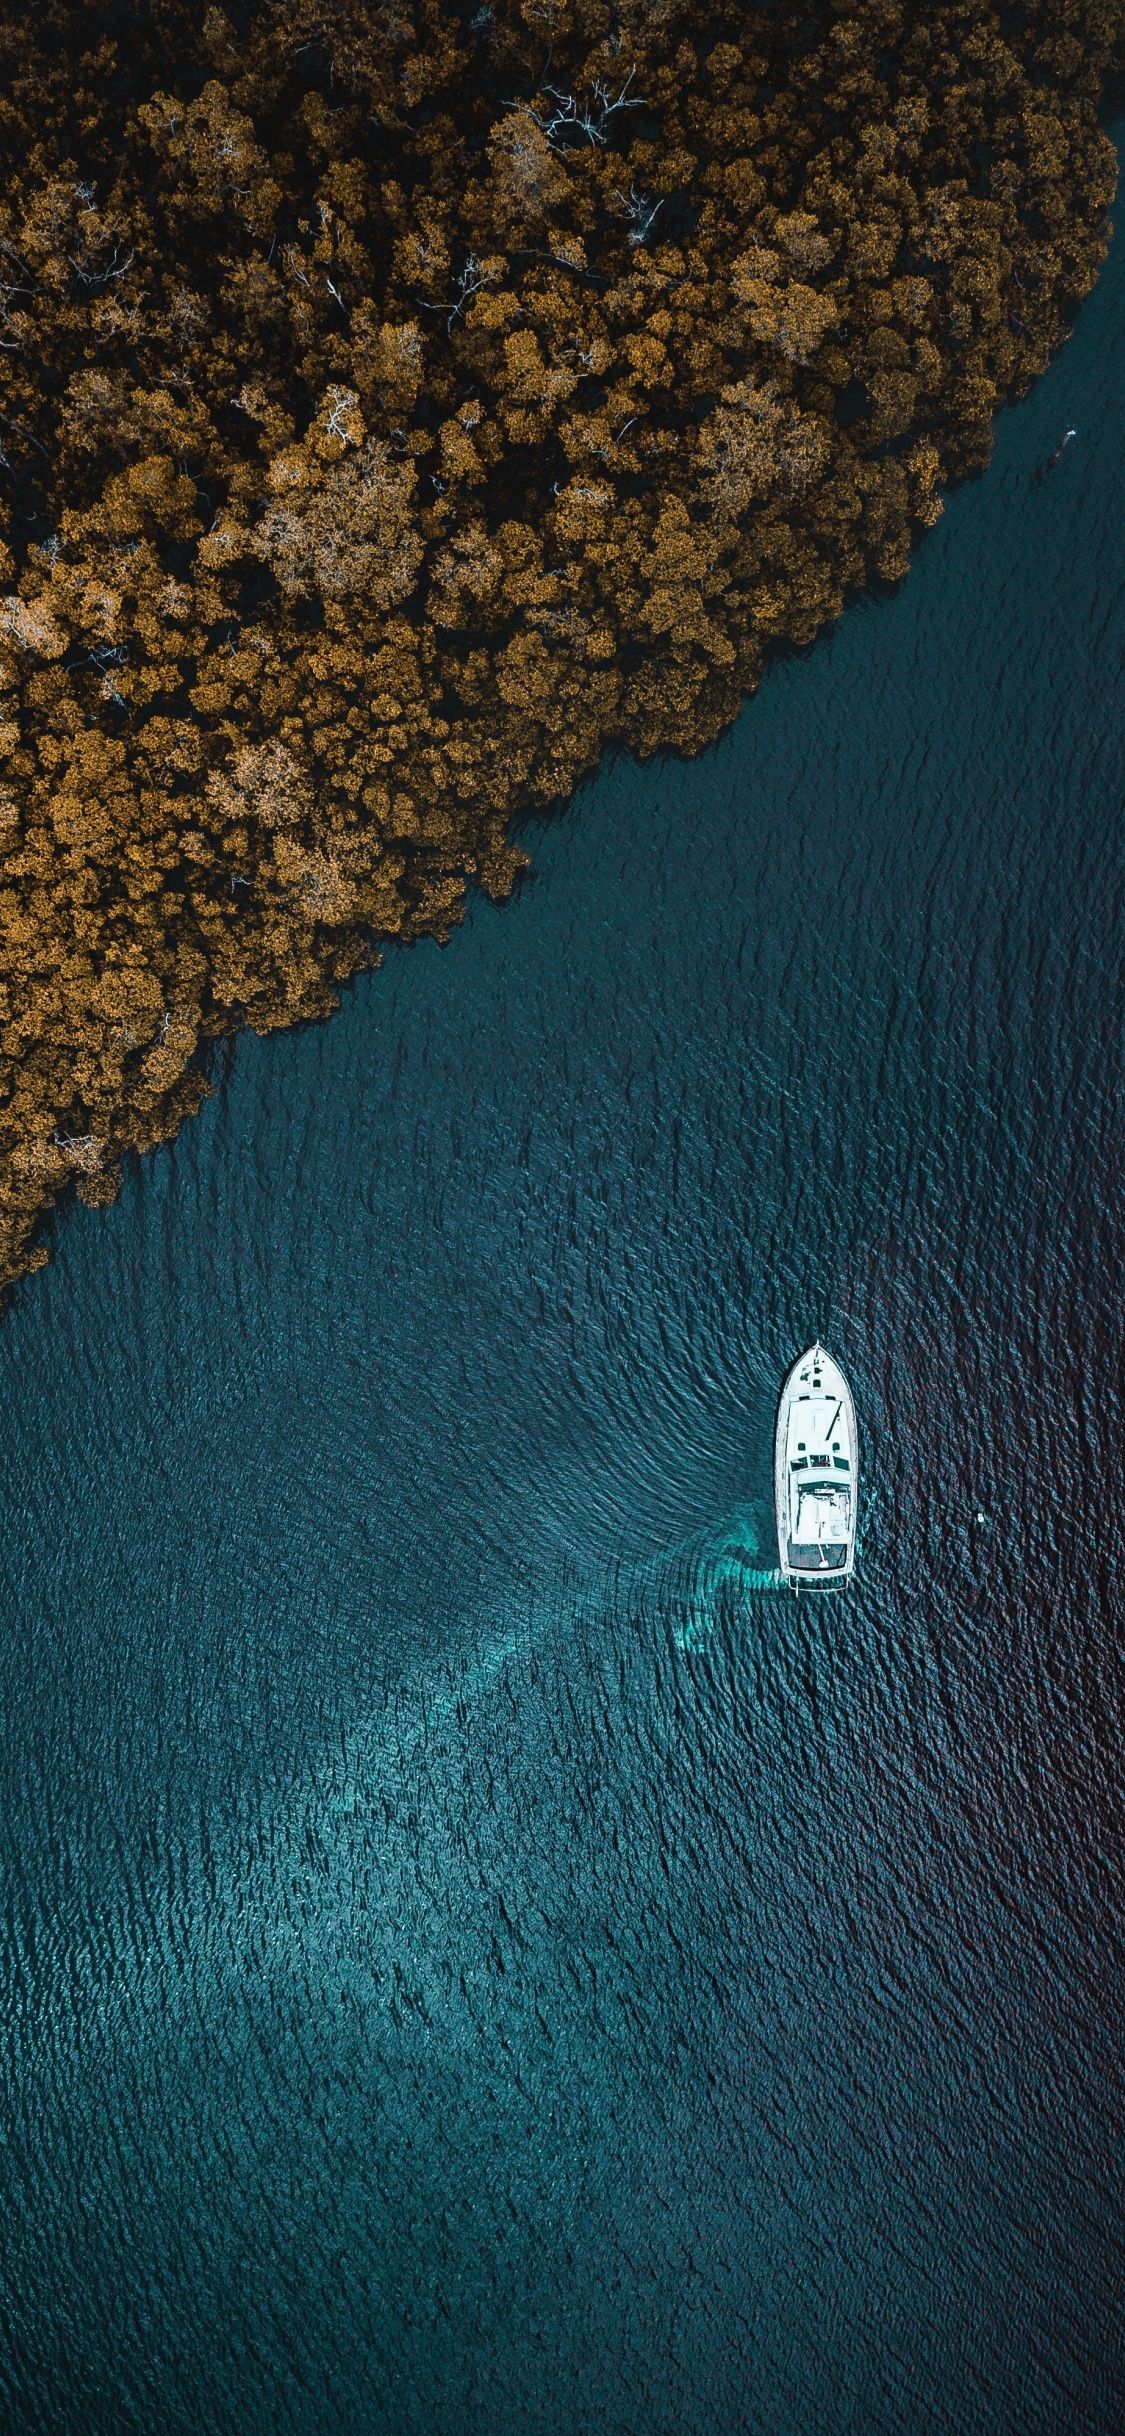 بهترین تصویر هوایی ثبت شده از قایق سفید در دریا کنار جنگل زرد